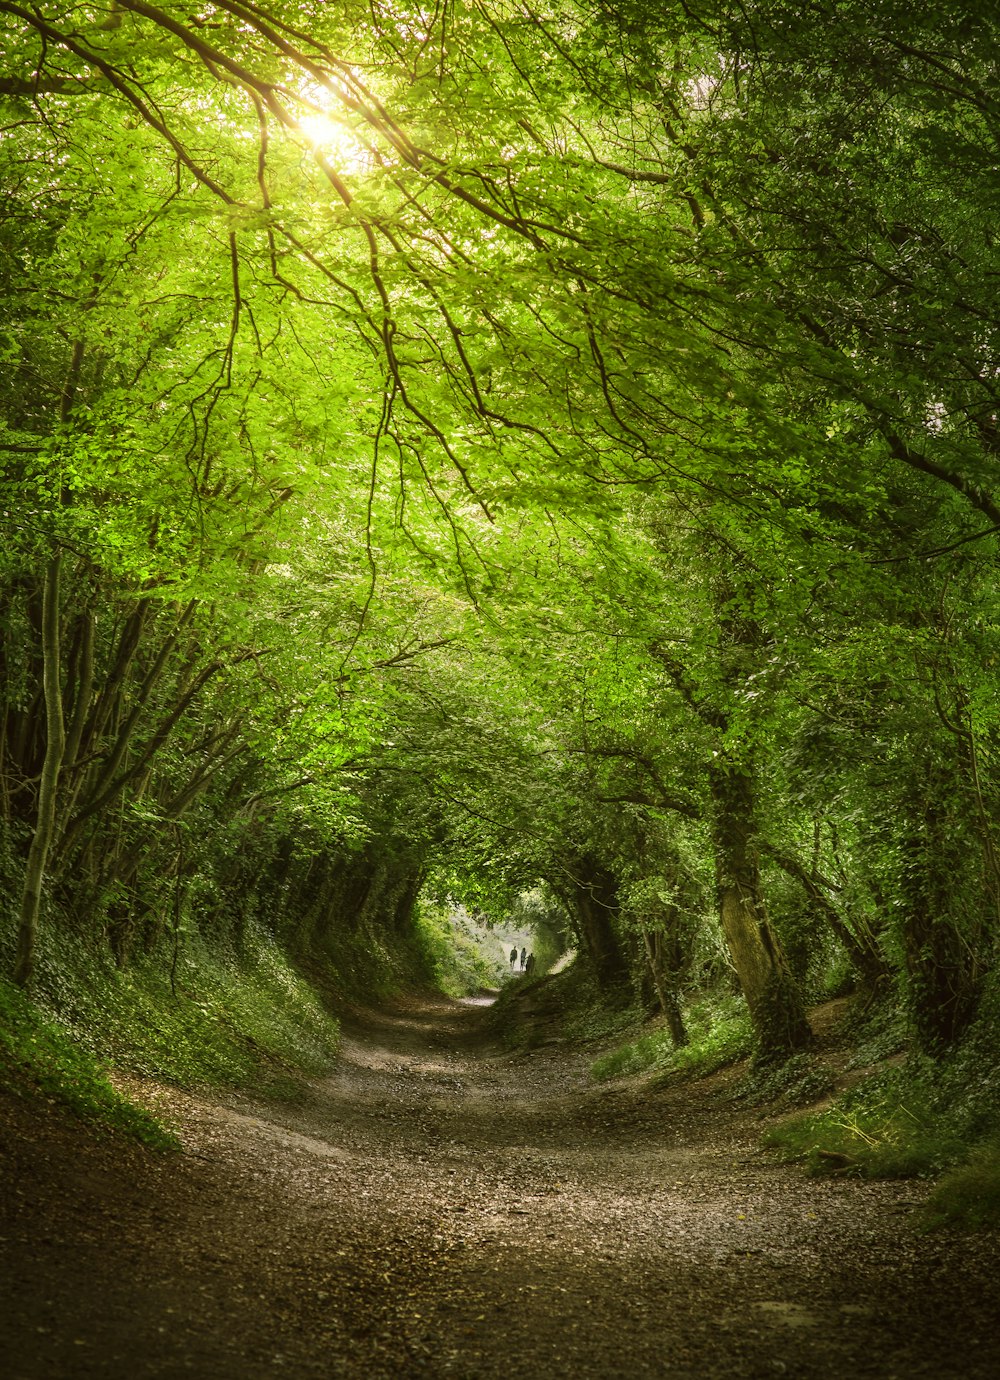 Un chemin de terre entouré d’arbres verdoyants